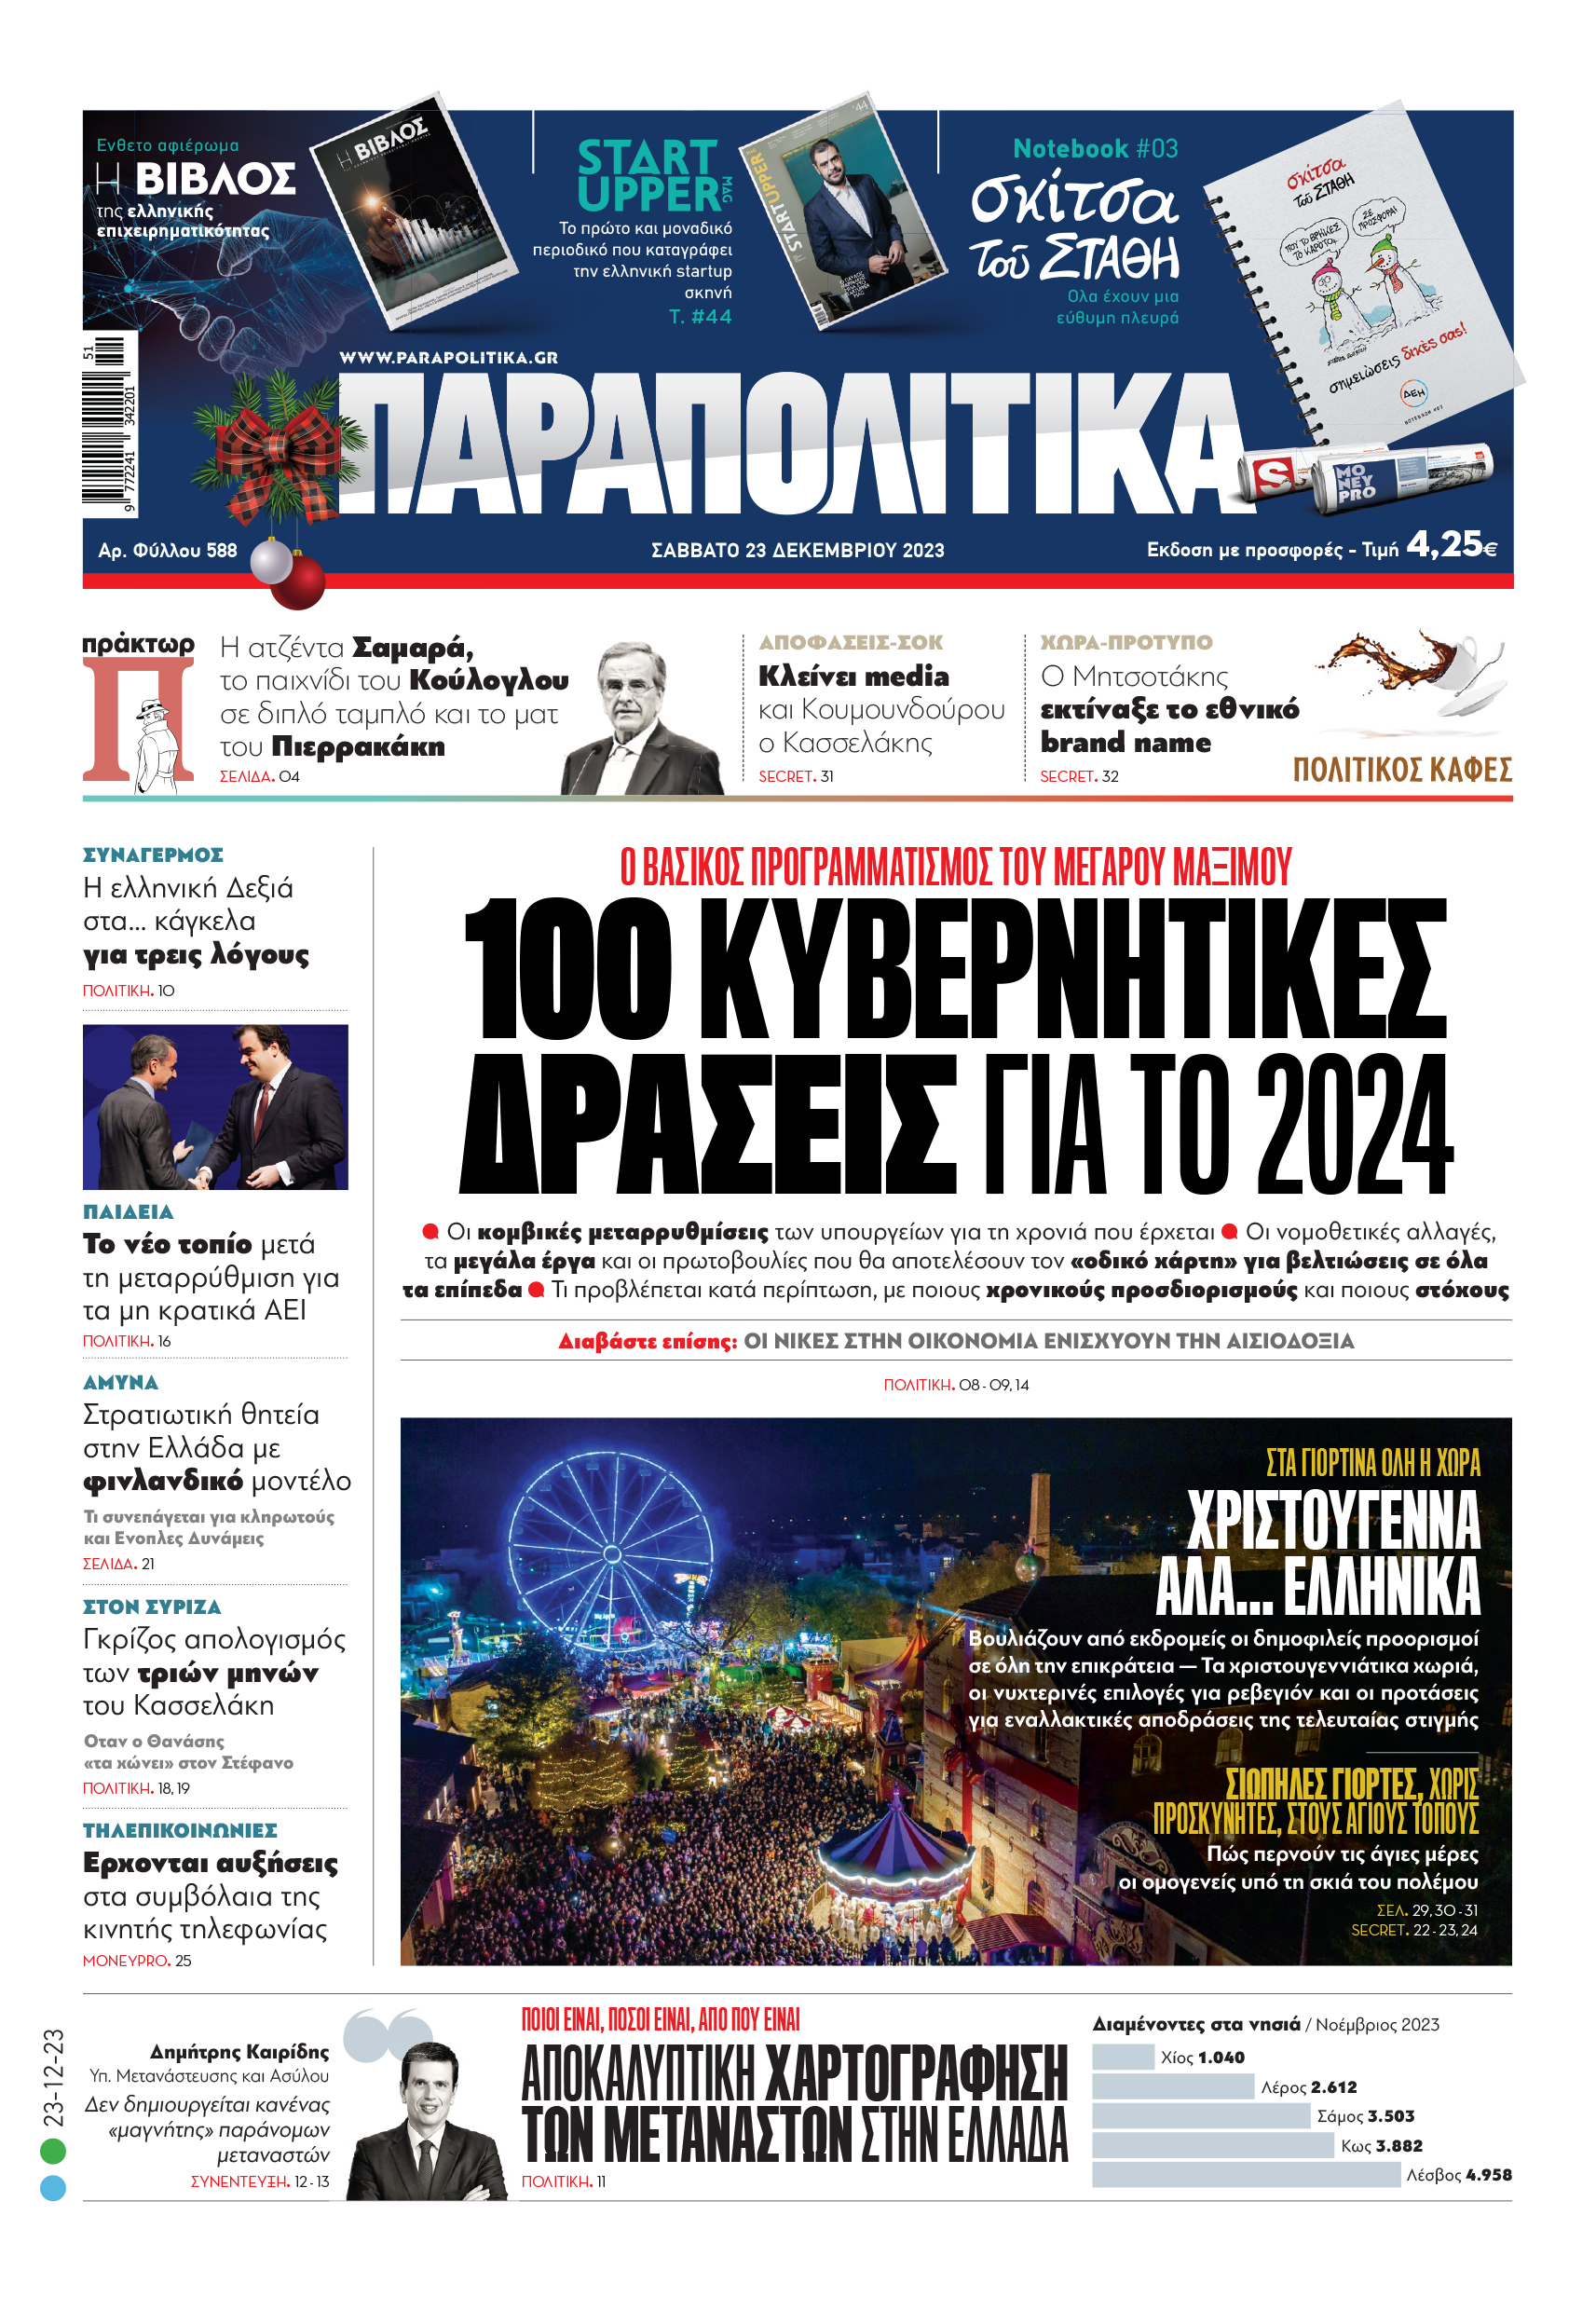 Με τίτλο: «100 κυβερνητικές δράσεις για το 2024» κυκλοφορούν αύριο, Σάββατο 23 Δεκεμβρίου, τα «Παραπολιτικά». Ο βασικός προγραμματισμός του Μεγάρου Μαξίμου  Ακόμη:  Οι νίκες στην οικονομία ενισχύουν την αισιοδοξία Αποκαλυπτική χαρτογράφηση των μεταναστών στην Ελλάδα